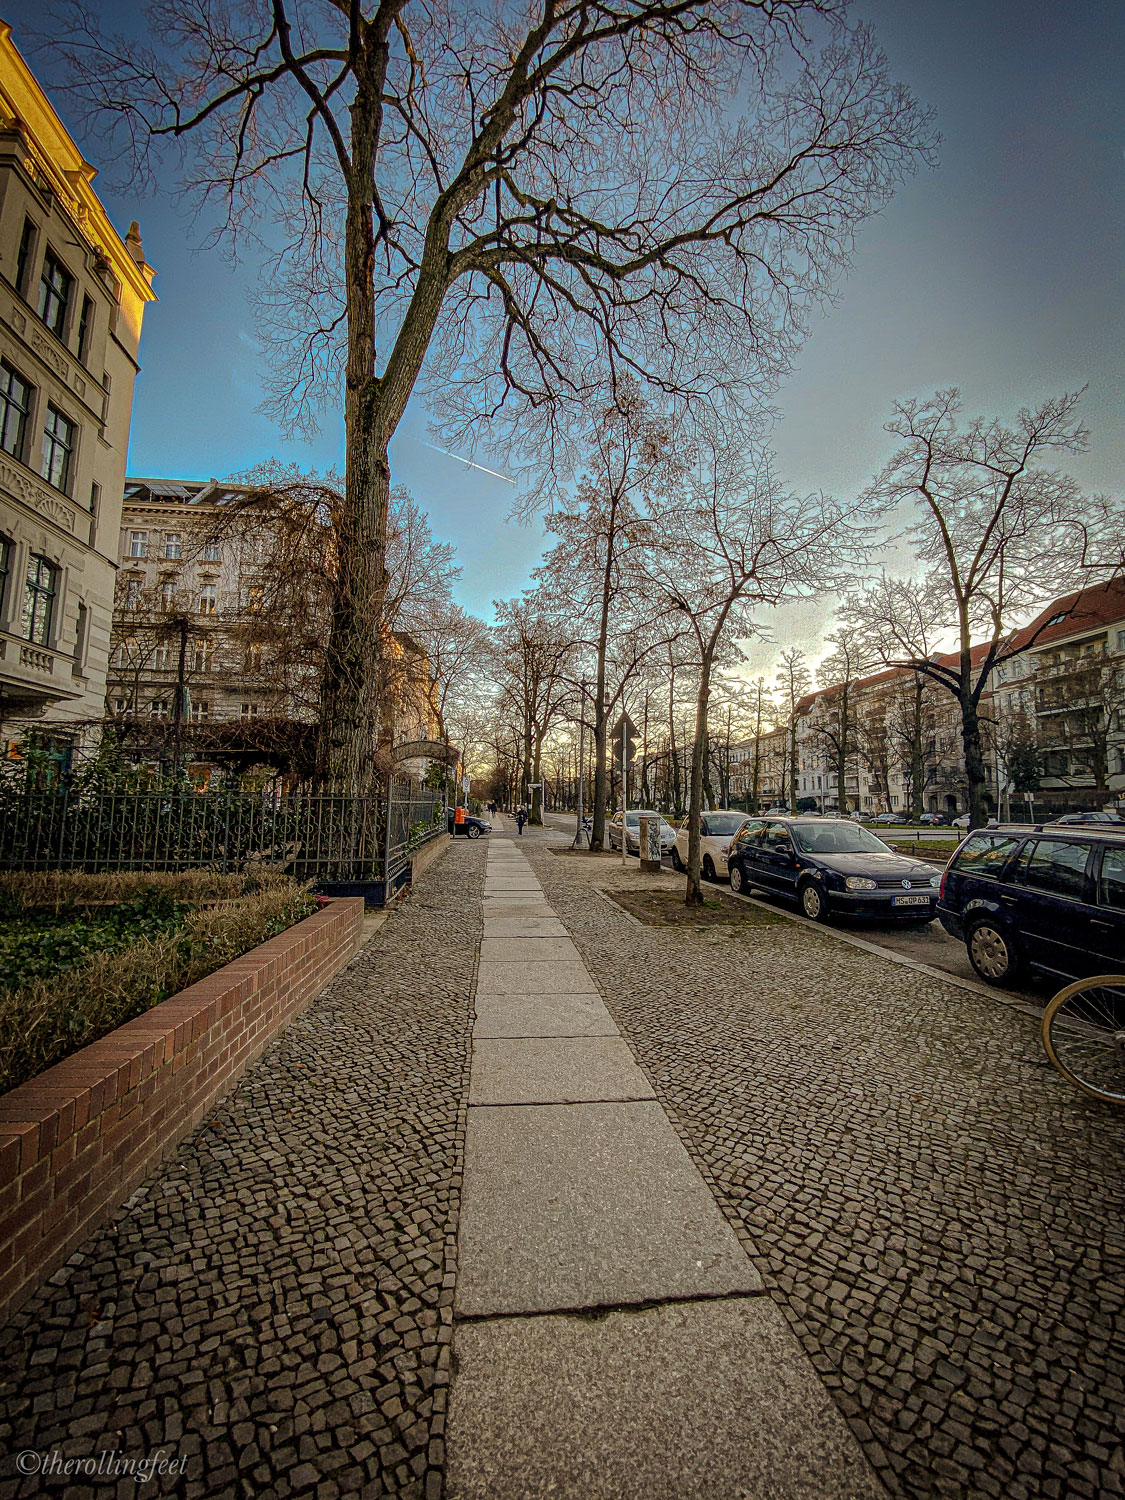 Berlin Roads